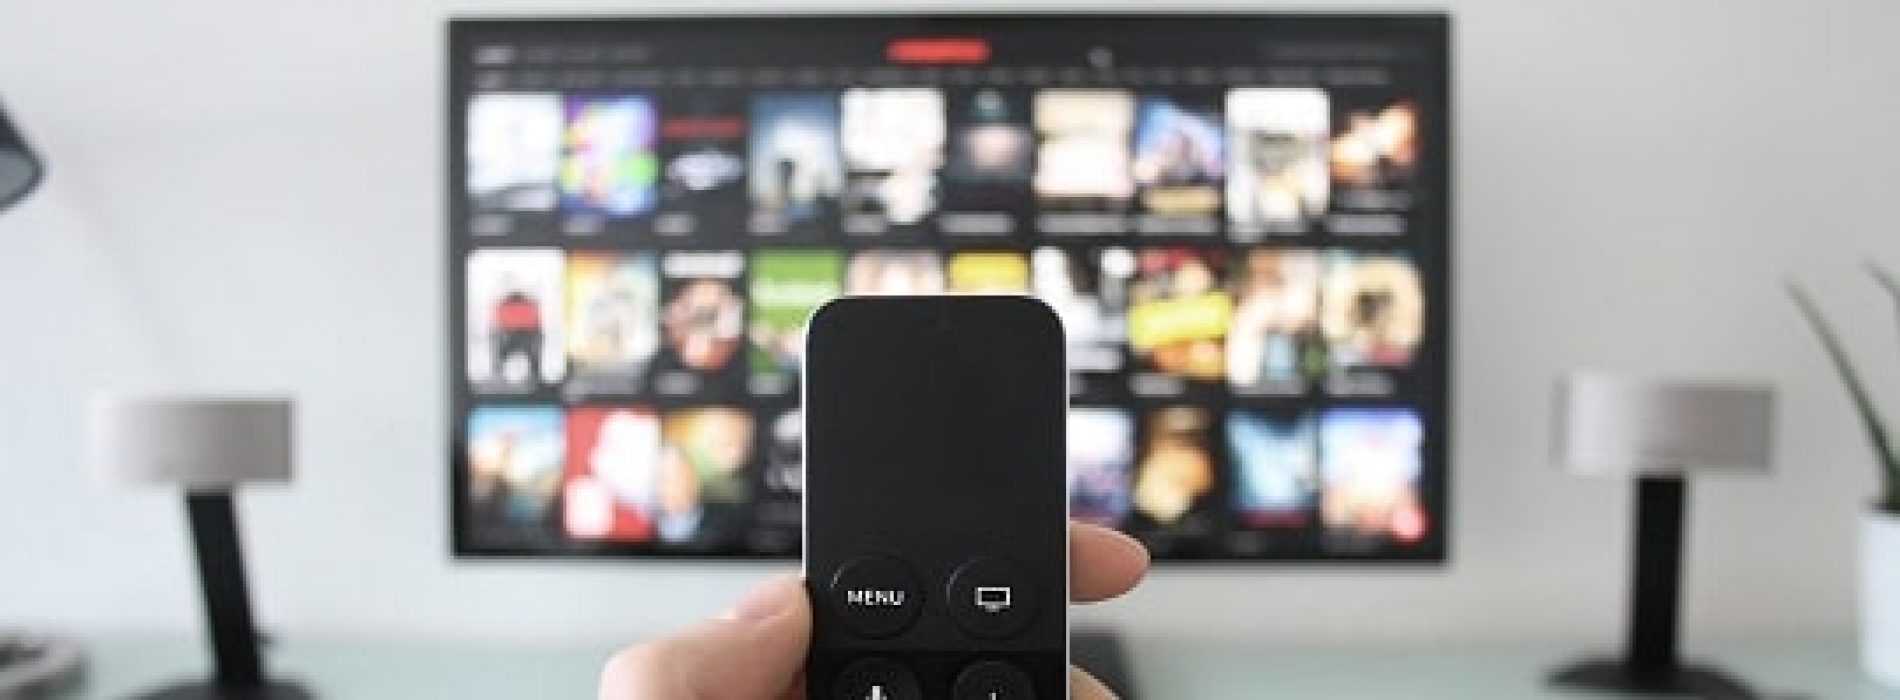 Sprer din smart-TV informasjon om dine TV-vaner?